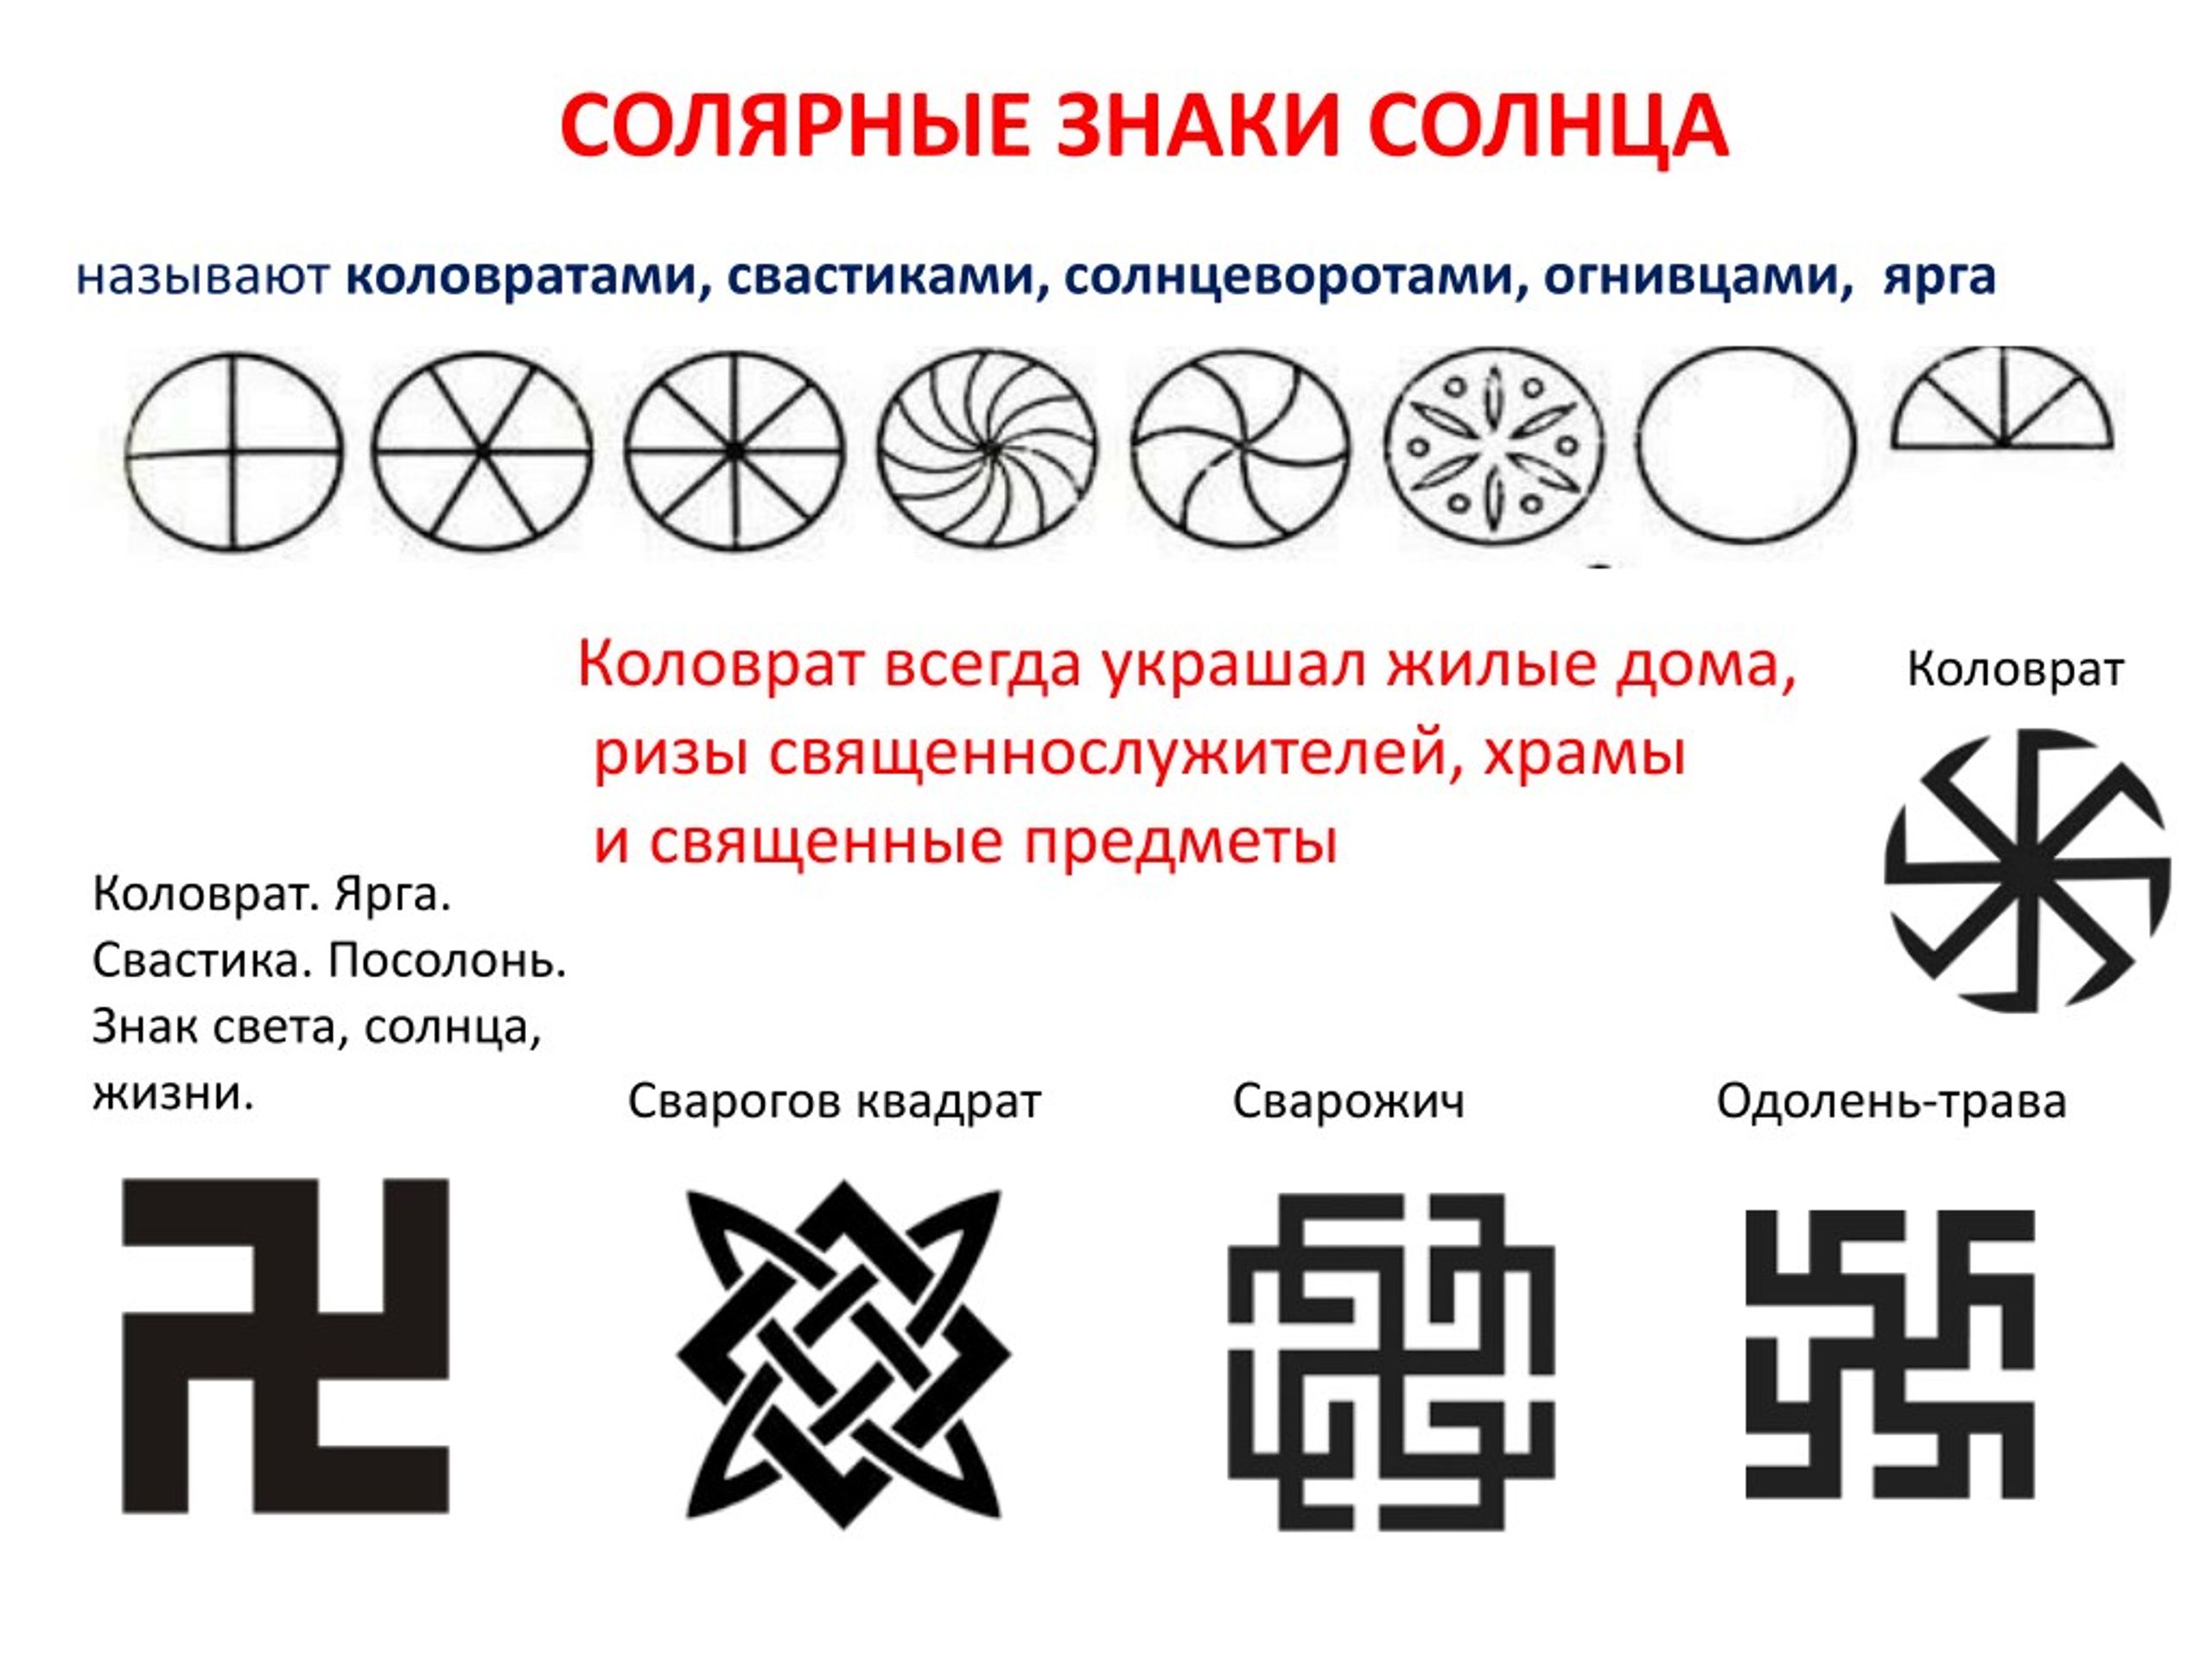 Выясните какие символы. Солярные знаки солнца у славян. Солярные символы древней Руси.